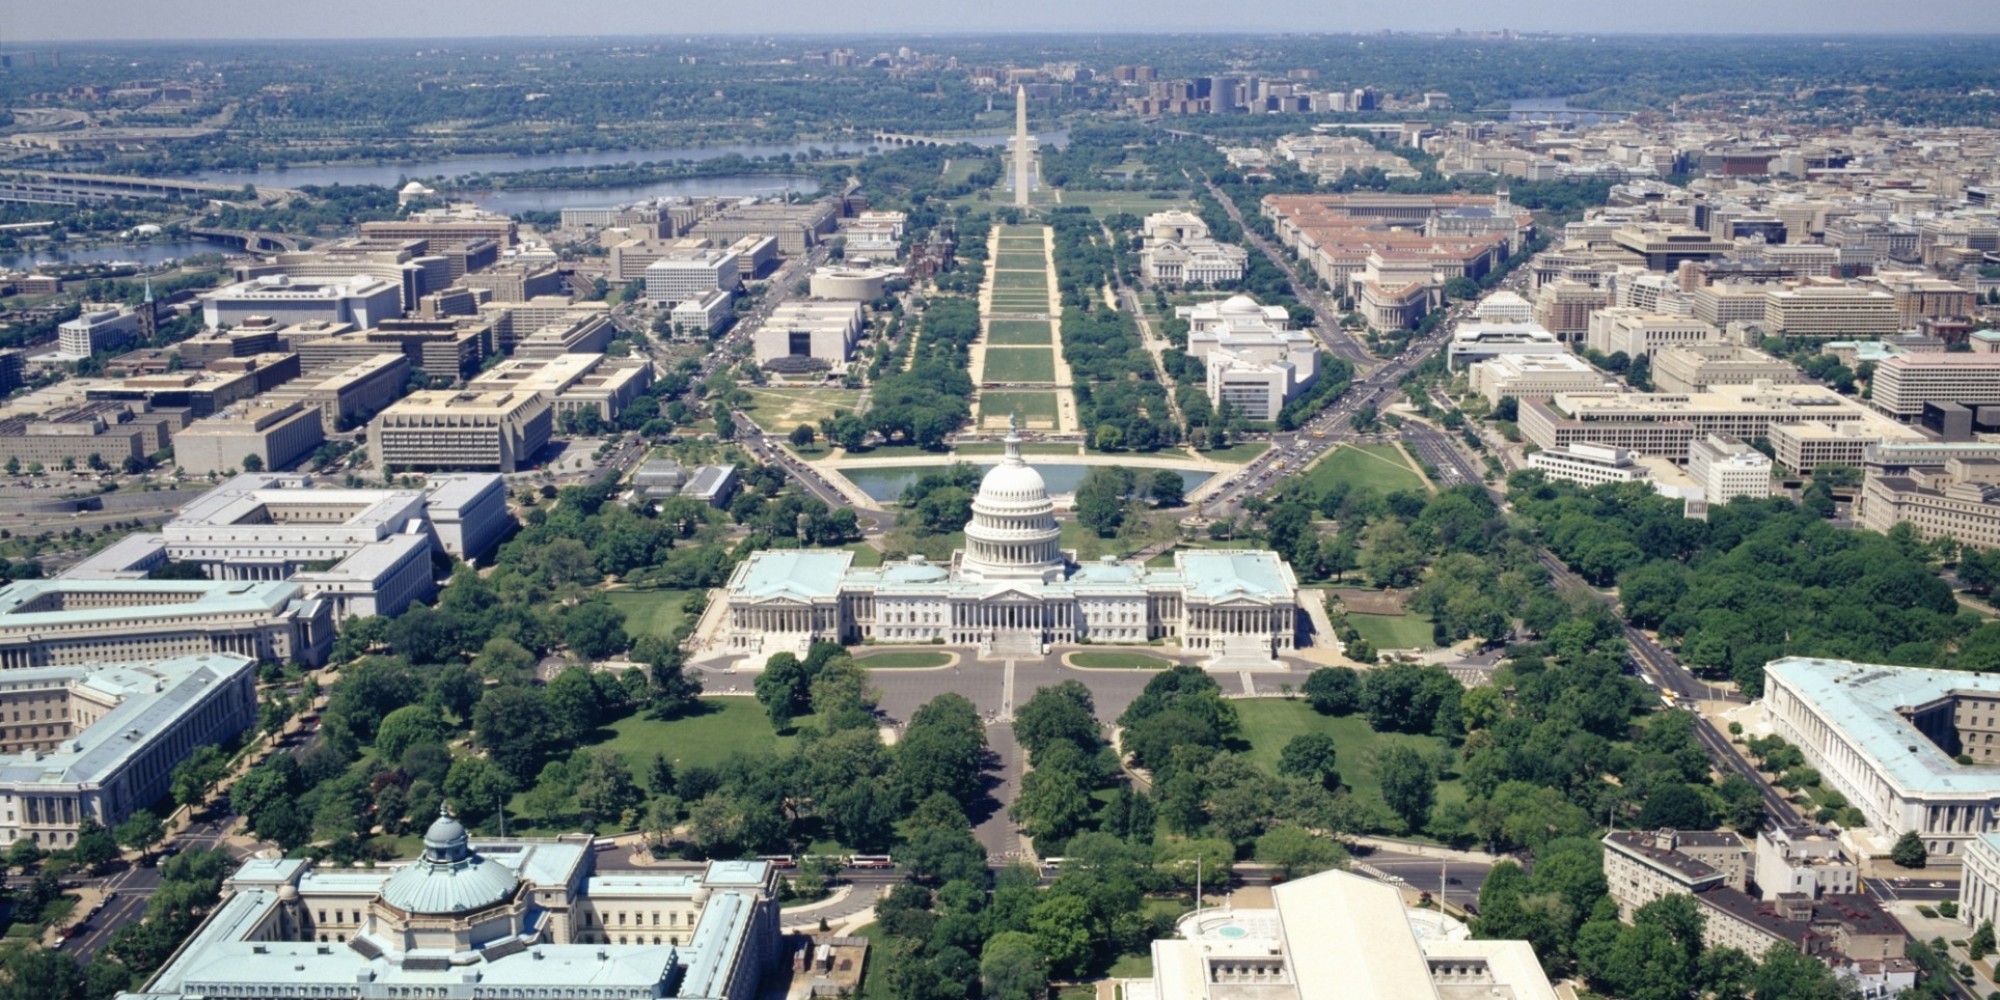 Image of Washington D.C.